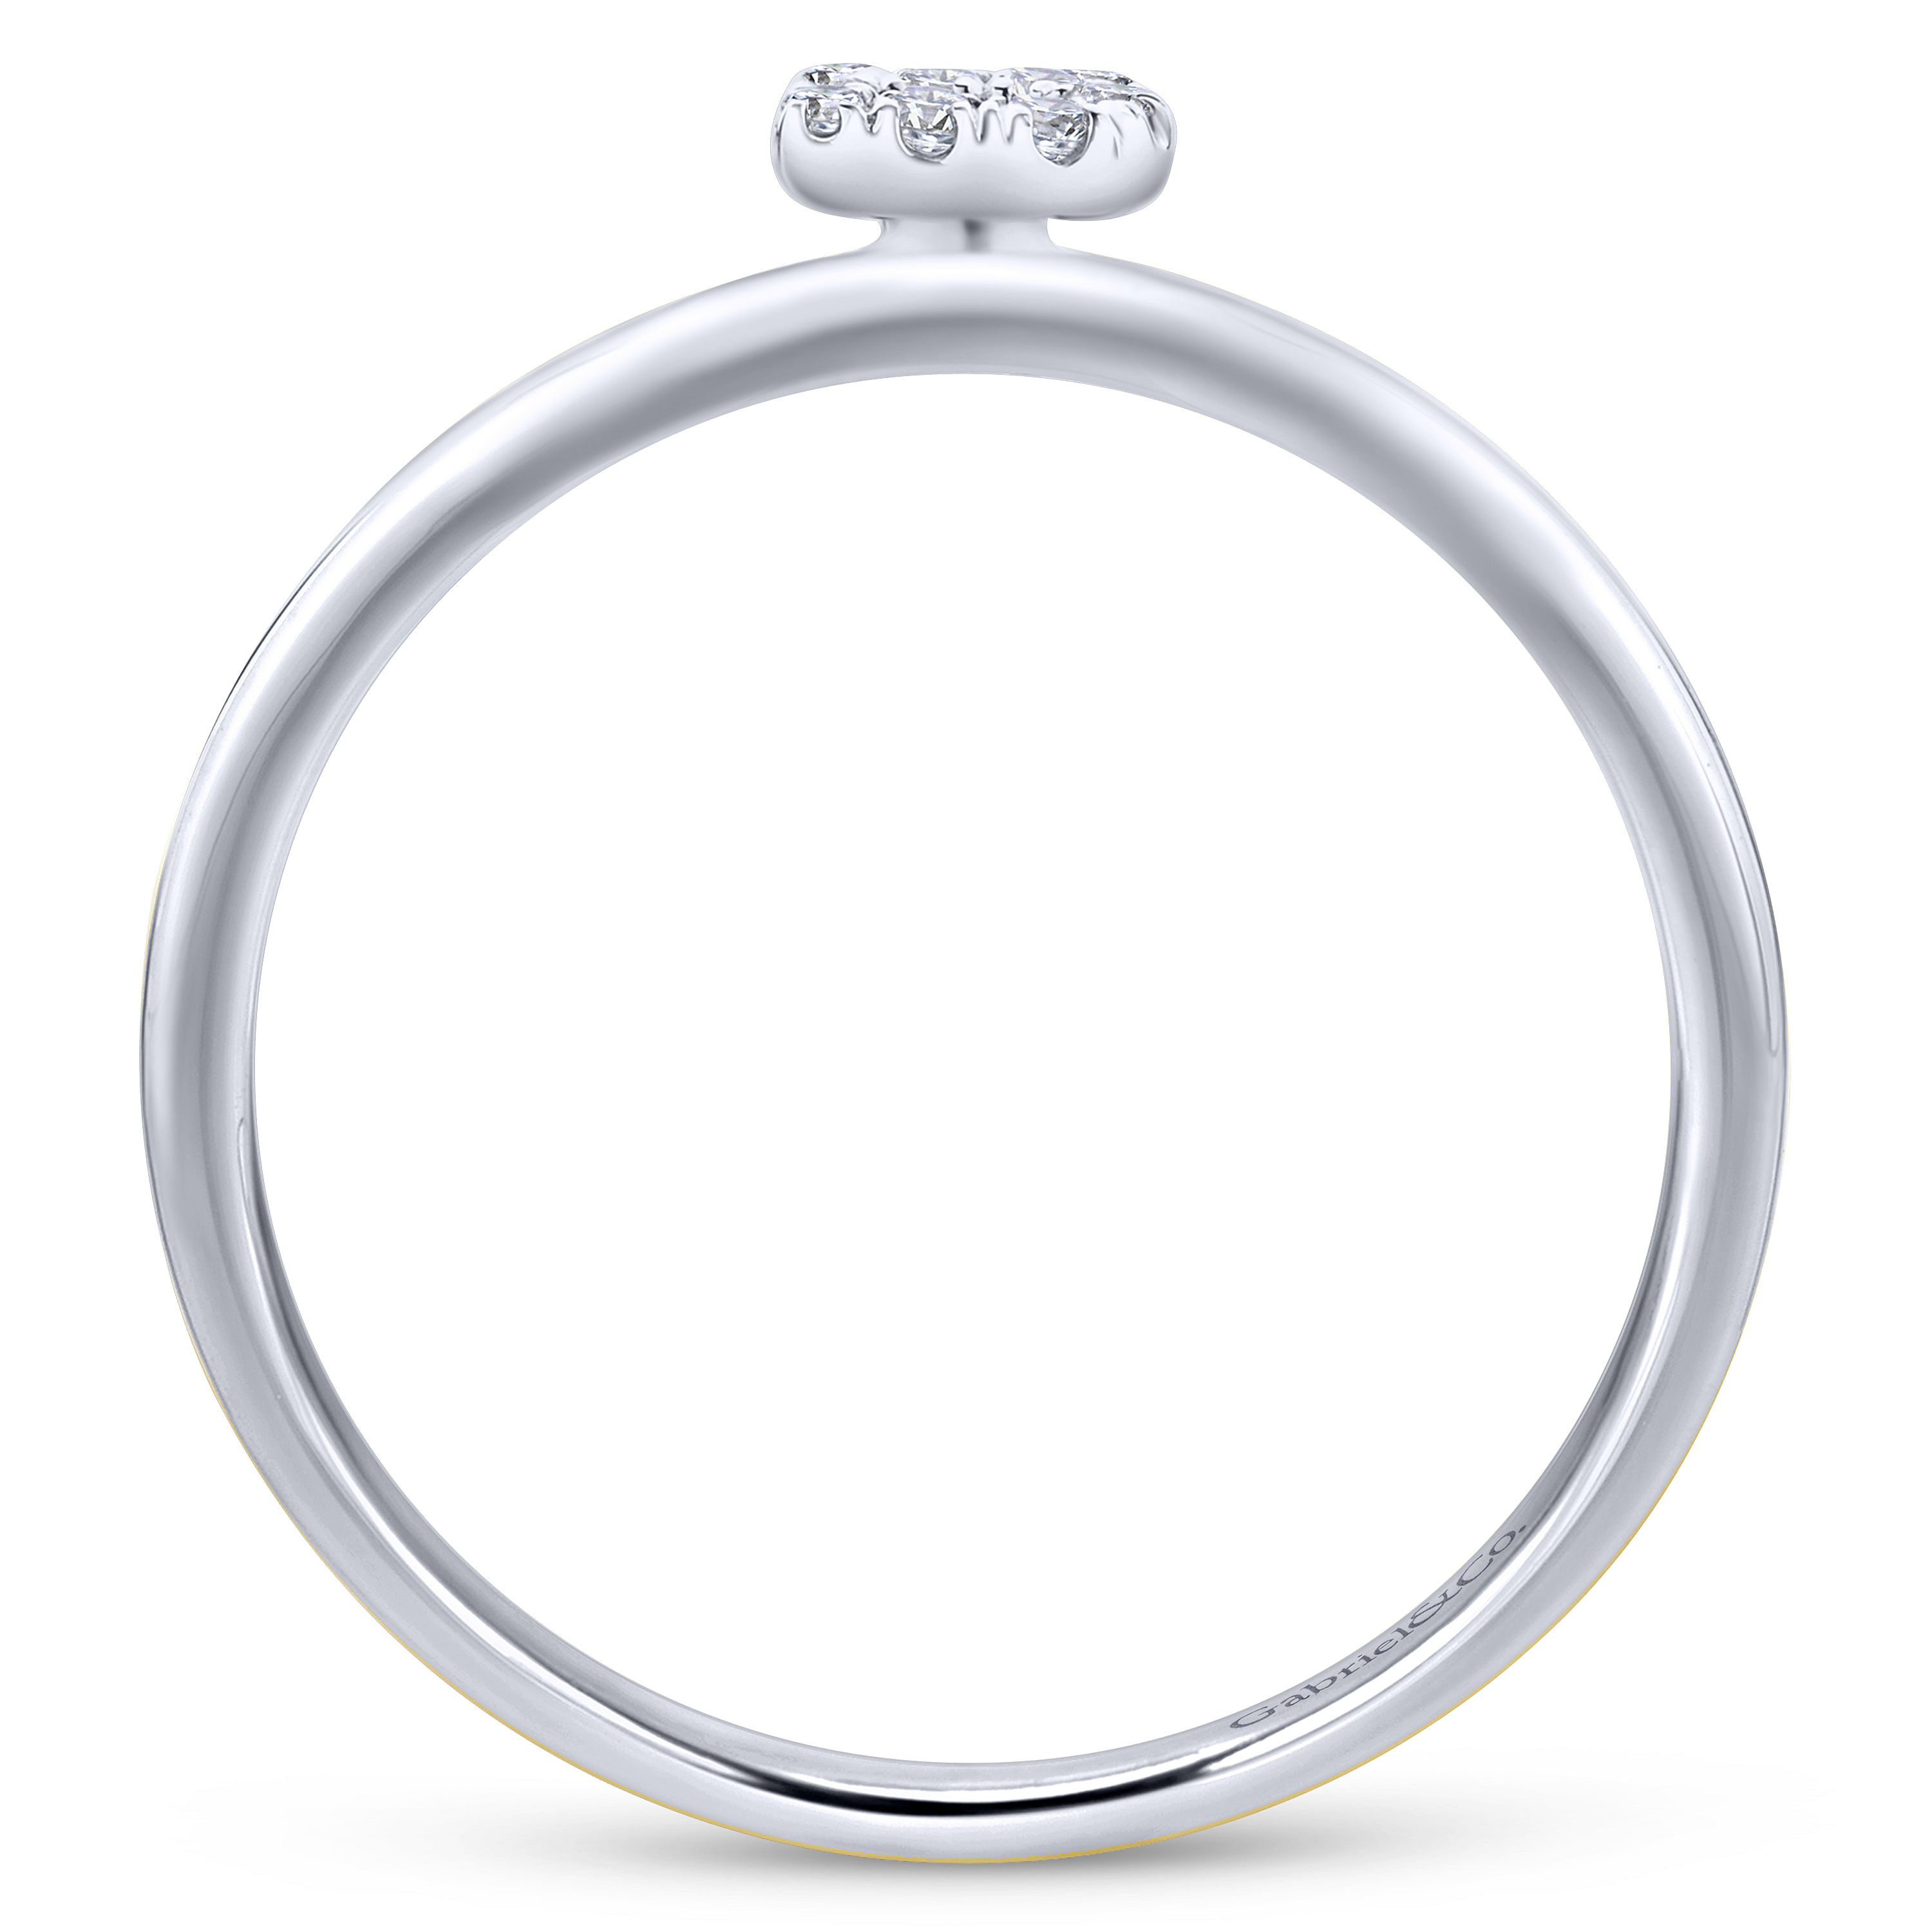 14K White Gold Pavé Diamond Uppercase B Initial Ring